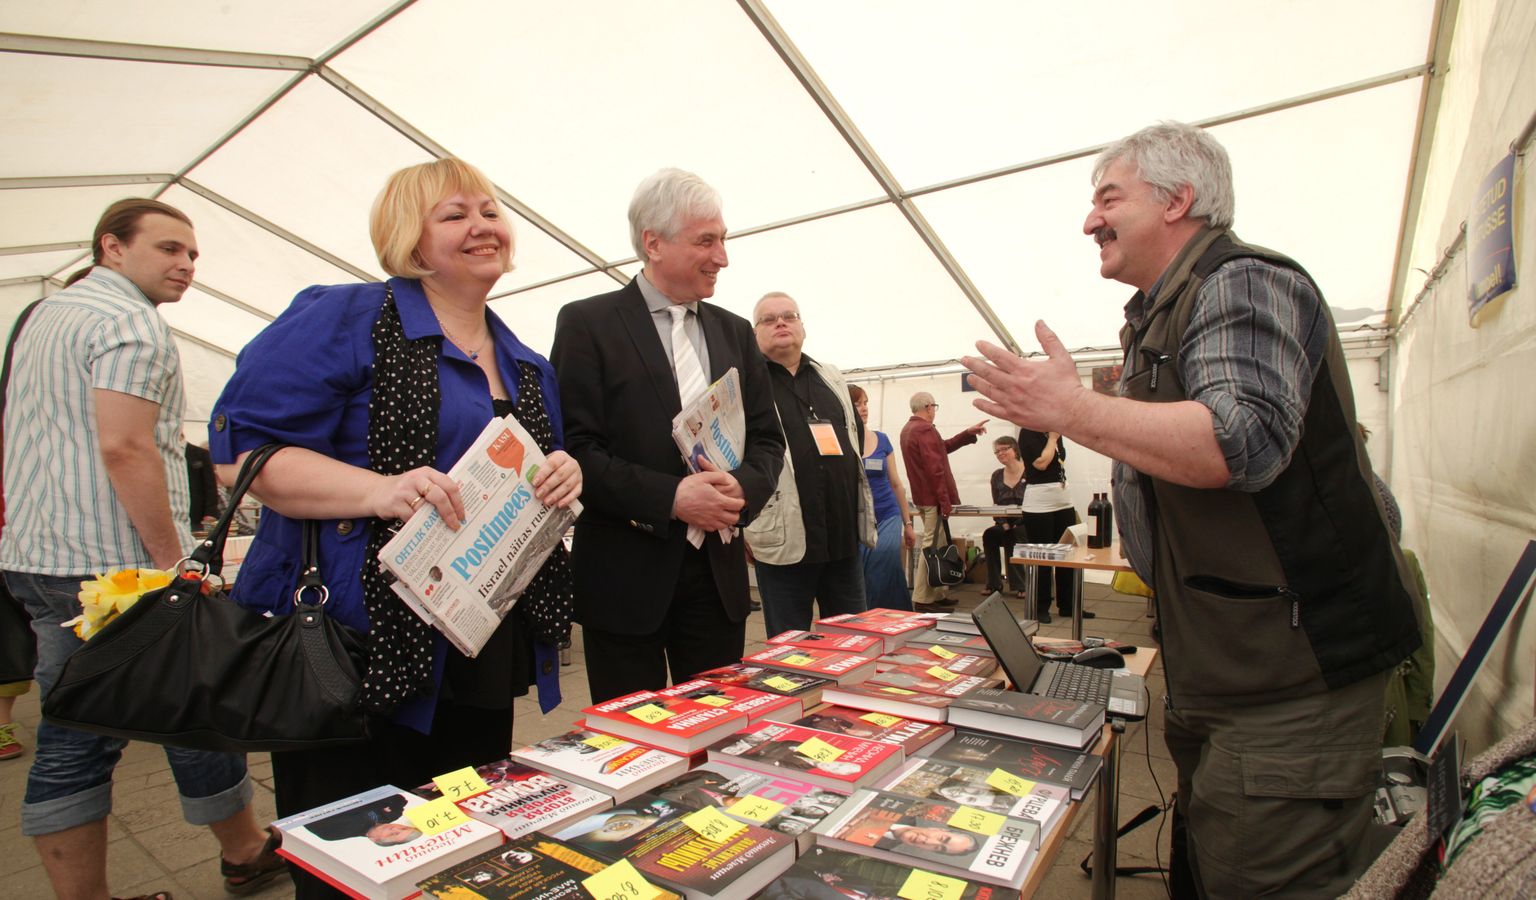 Kirjandusfestivali Prima Vista venekeelse programmi koordinaator Olga Einasto viis Leonid Mletšini (heleda lipsuga) 9. mail 2013 festivali raamatulaadale. Raamatukaupmees Igor Rosenfeld (paremal) oli oma letile välja pannud mitmeid Mletšini teoseid.